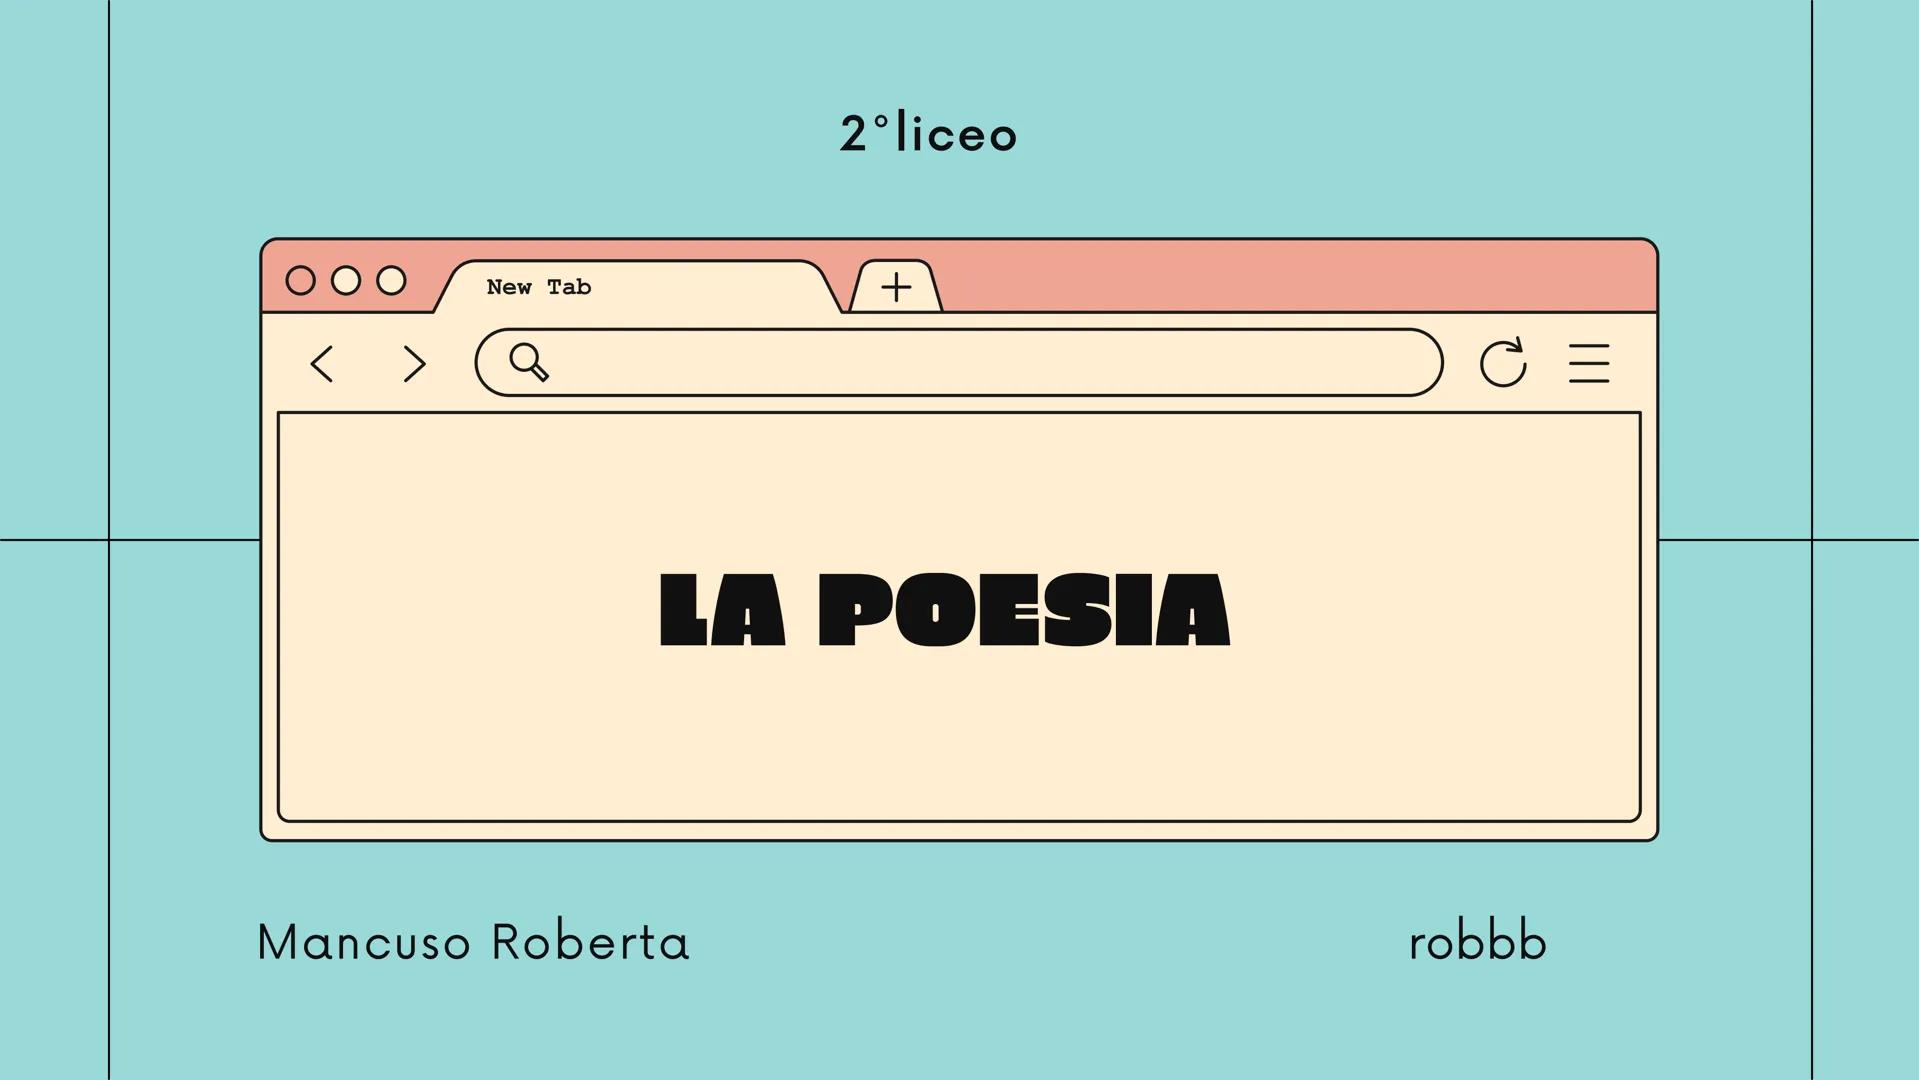 New Tab
Q
2°liceo
Mancuso Roberta
+
LA POESIA
robbb Che cos'è la
poesia?
La poesia è un componimento fatto di frasi
dette versi, in cui il s